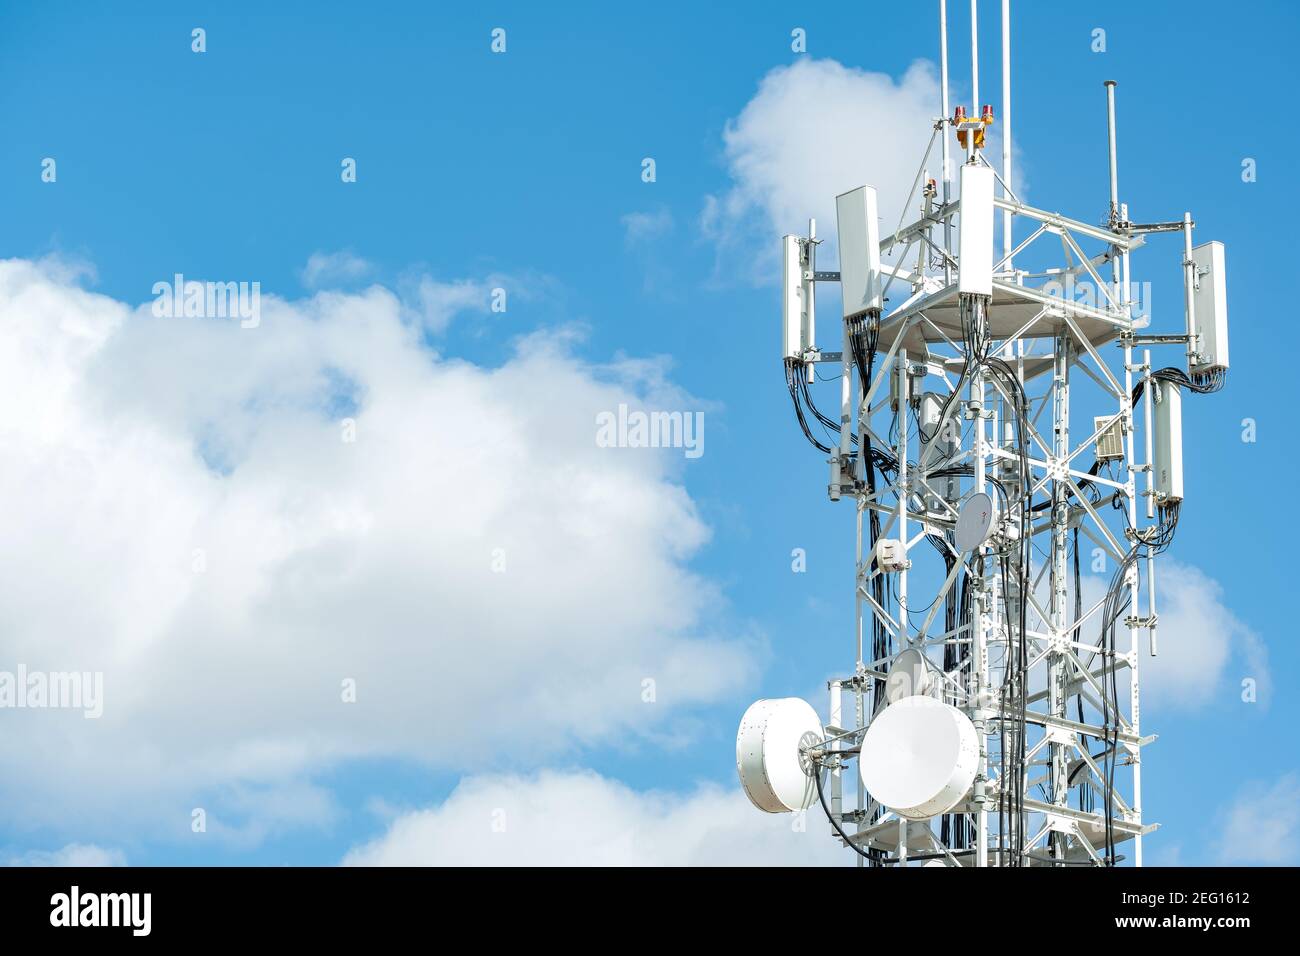 Telekommunikationsmast, Turm am blauen Himmel mit weißen Wolken Hintergrund in der Türkei - Oktober 2020: Radio- und Satellitenmast. Telekommunikationsbranche. Stockfoto